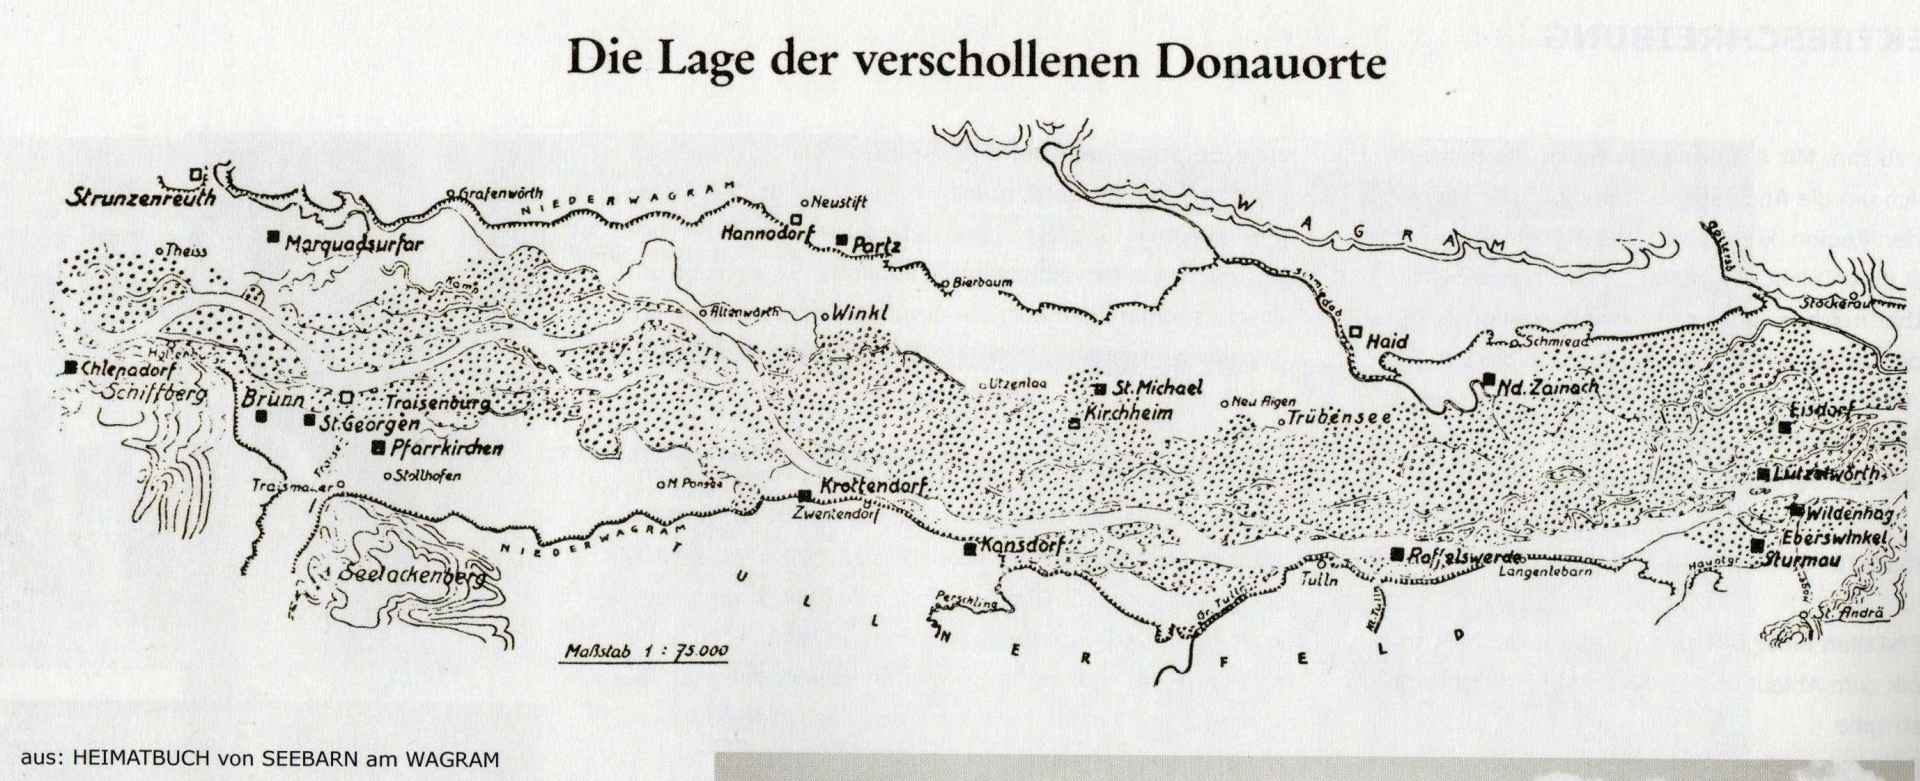 Lage der verschollenen Donauorte